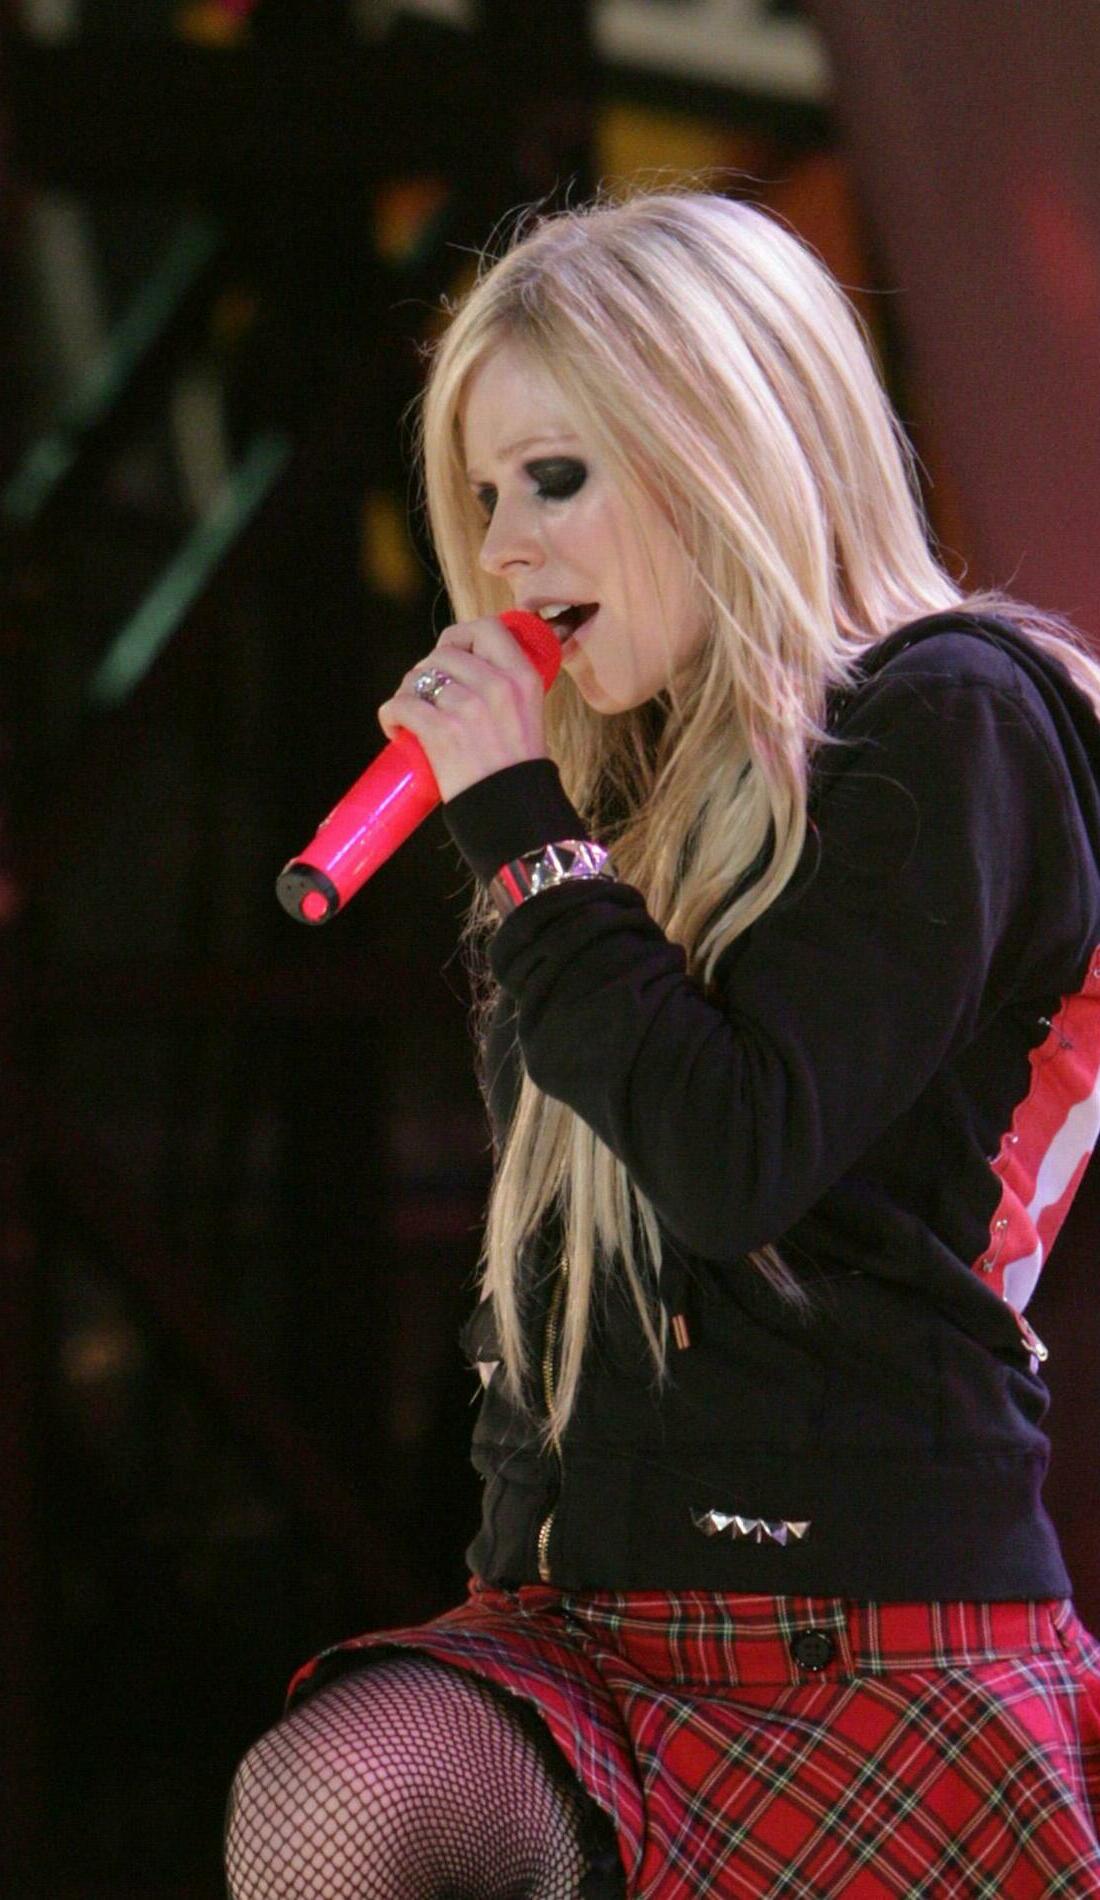 A Avril Lavigne live event